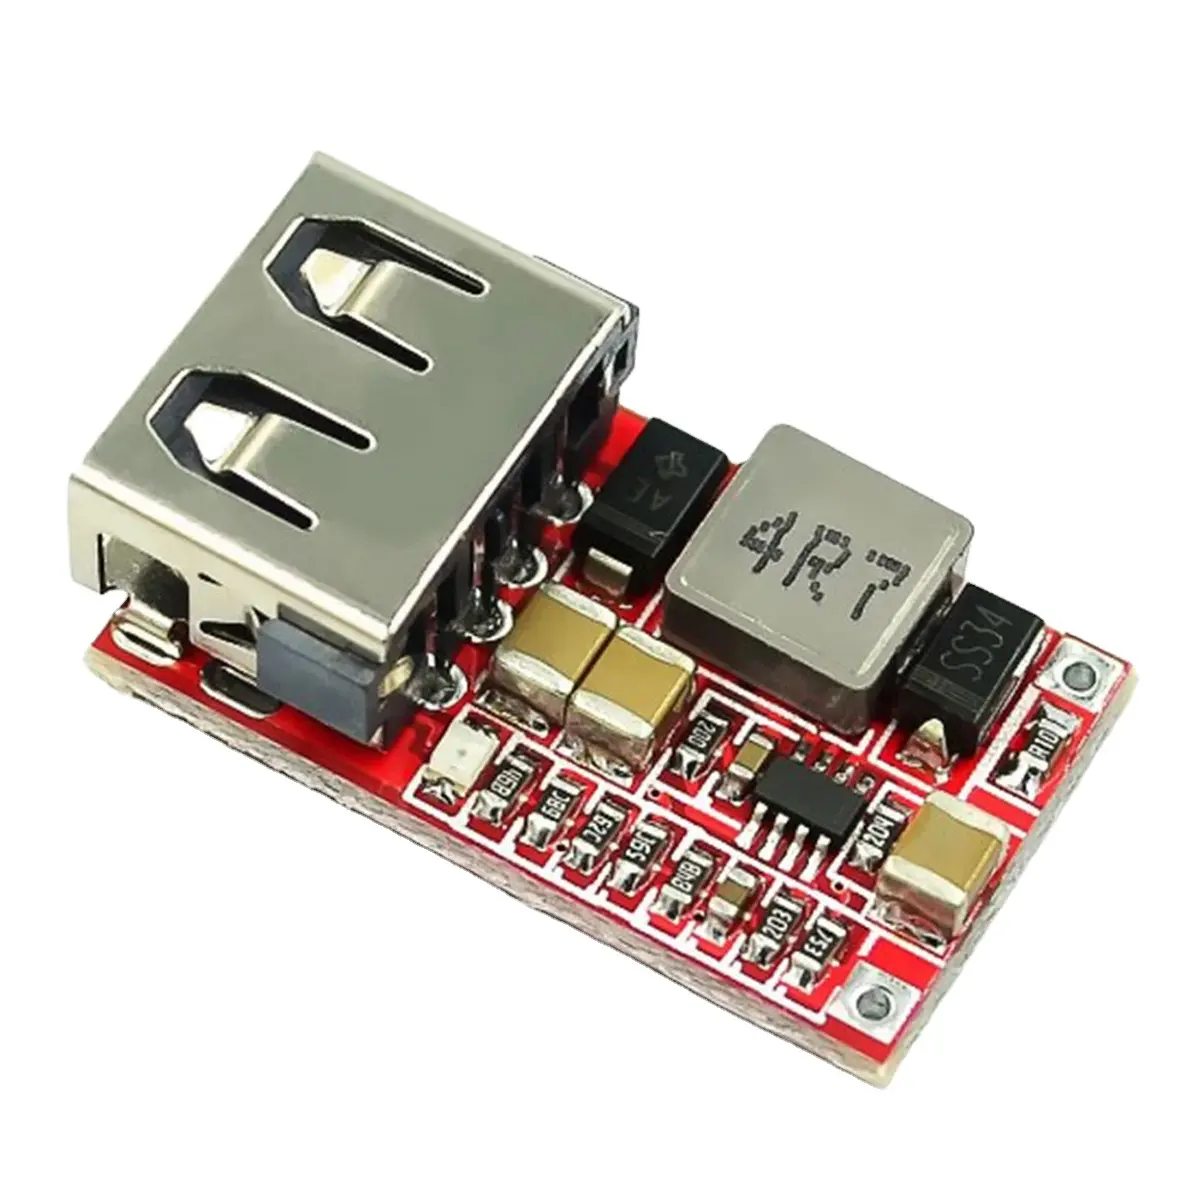 डीसी-डीसी बक वोल्टेज रेगुलेटर मॉड्यूल 6-24V 12V/24V से 5V 3A USB चार्जर मॉड्यूल बक कनवर्टर रेगुलेटर